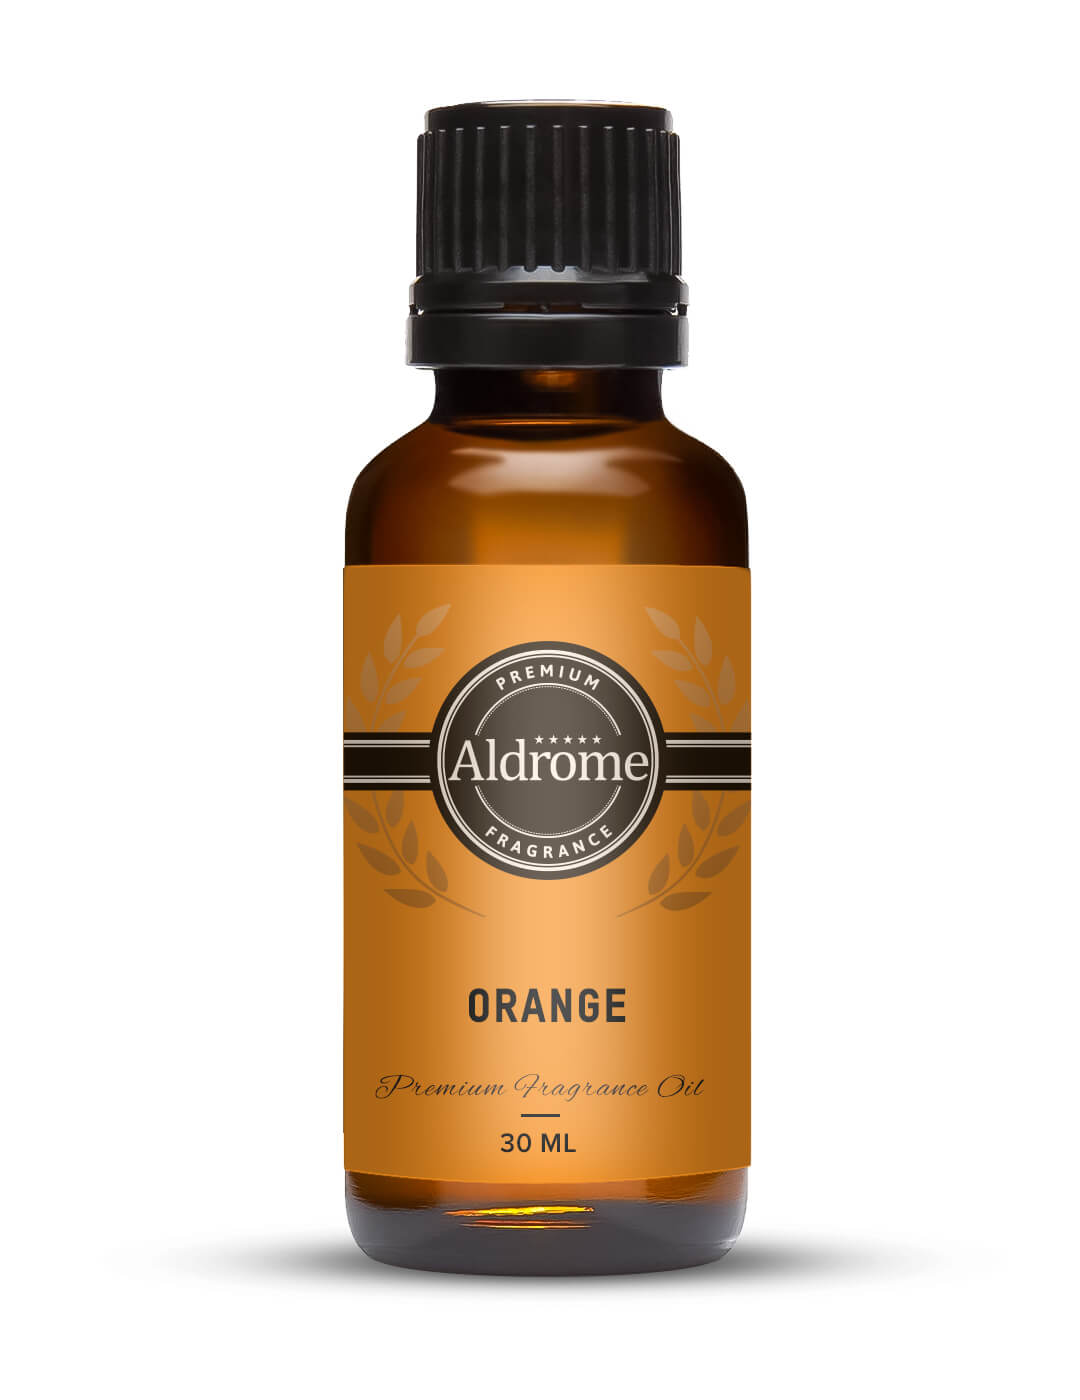 Orange Fragrance Oil - 30ml | Buy Orange Fragrance Oil | Aldrome Premium Fragrance Oil